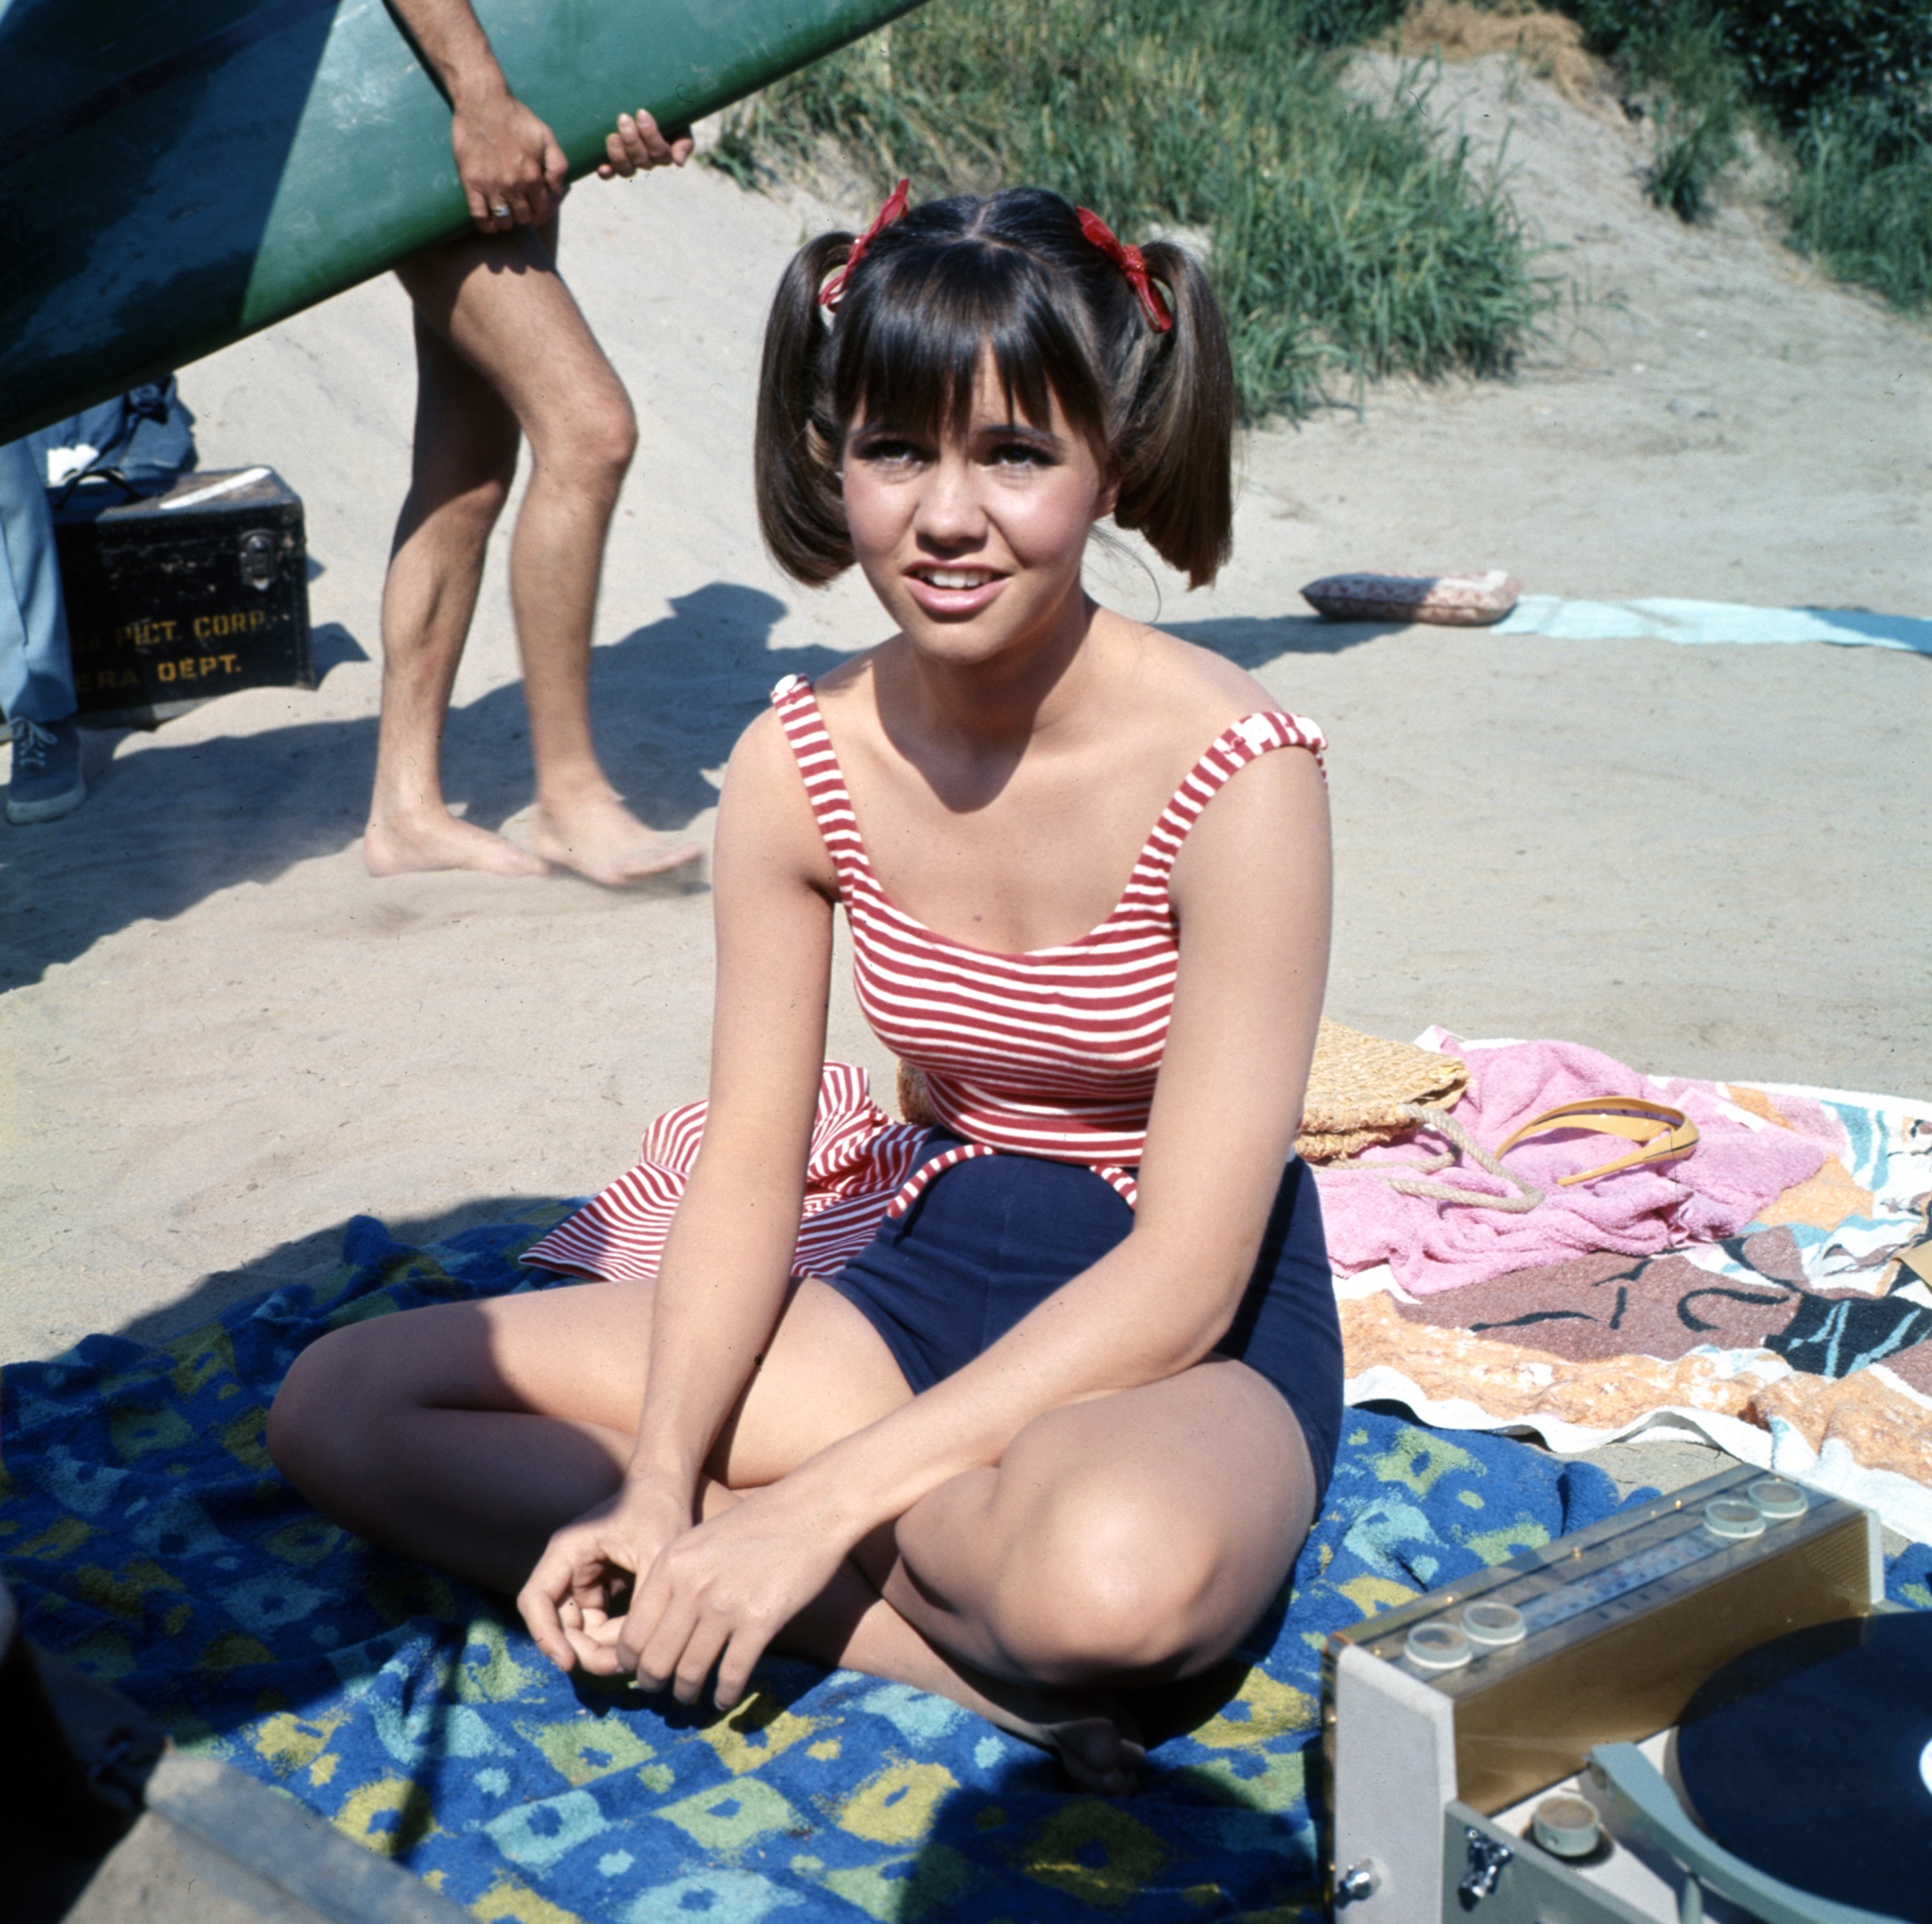 Sally Field spielt Gidget in der ersten Staffel von "Gidget" im Jahr 1965 | Quelle: Getty Images